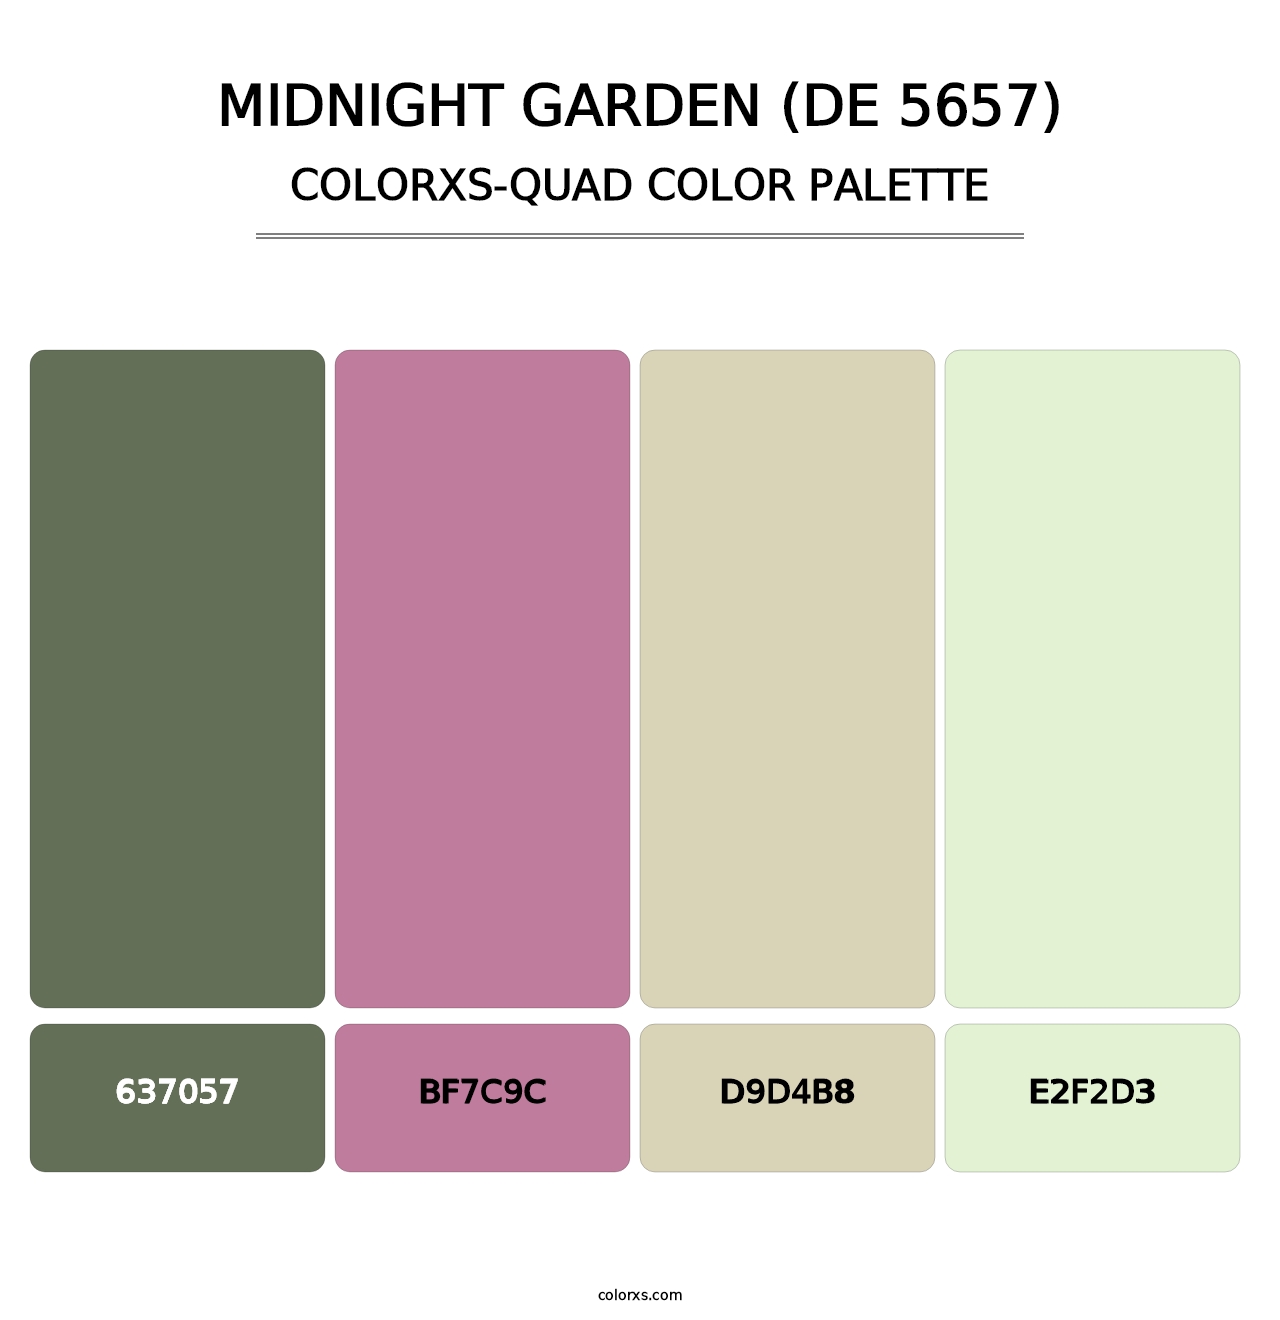 Midnight Garden (DE 5657) - Colorxs Quad Palette